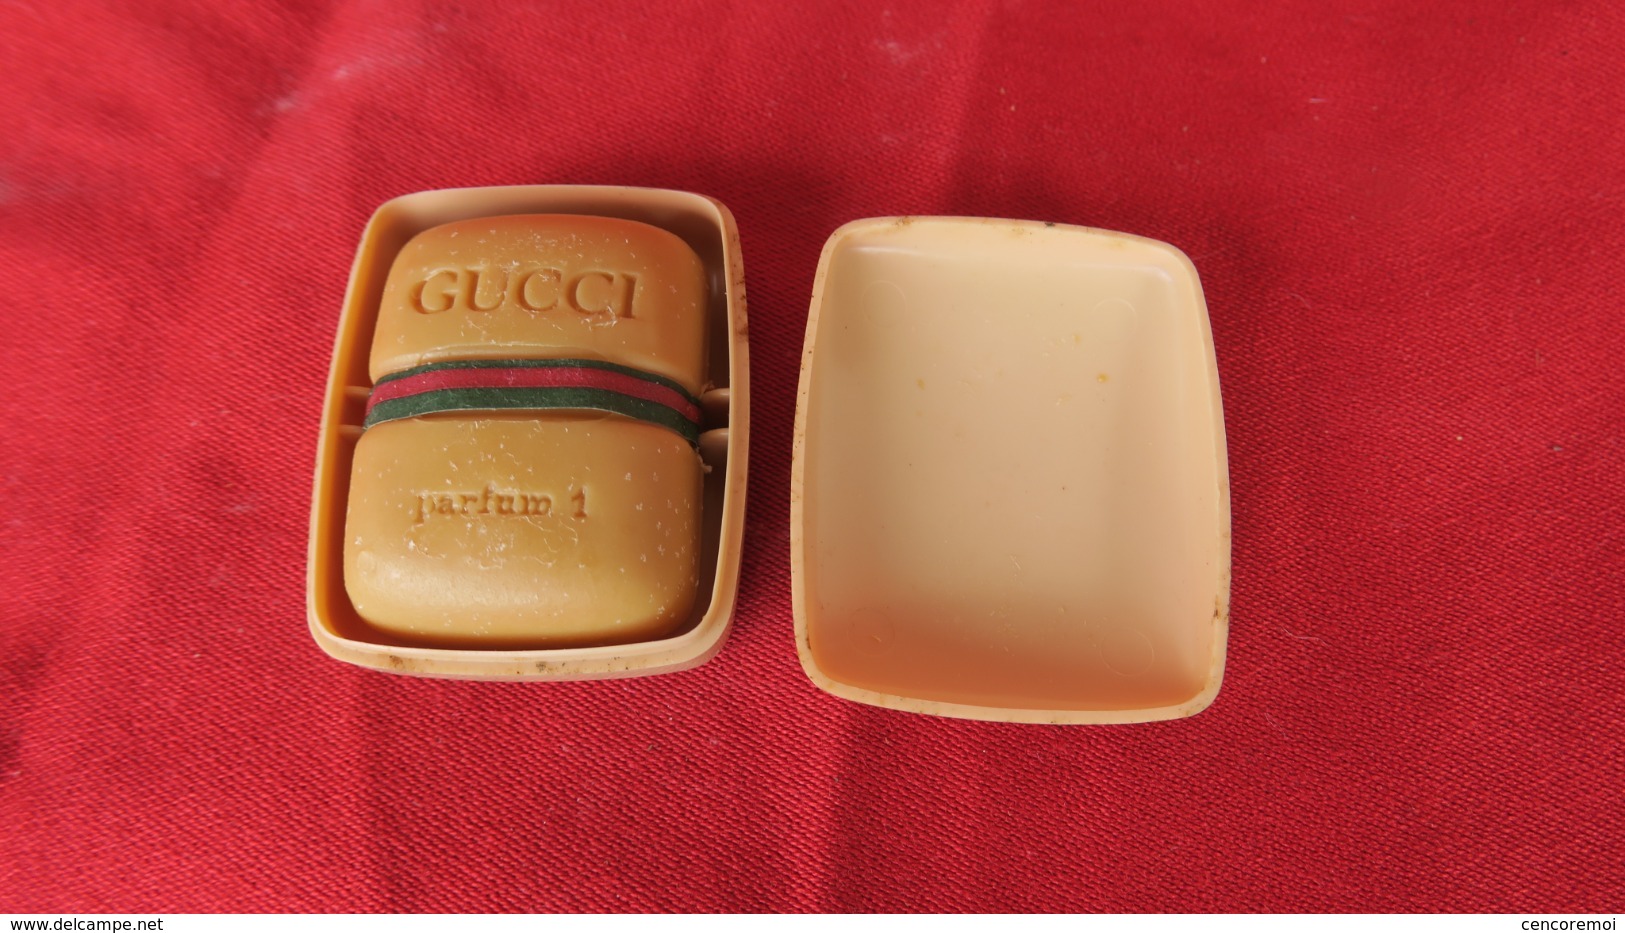 Savonnette Miniature Parfum 1 Gucci, Savon De Collection Vintage Dans Sa Boite D'origine - Beauty Products